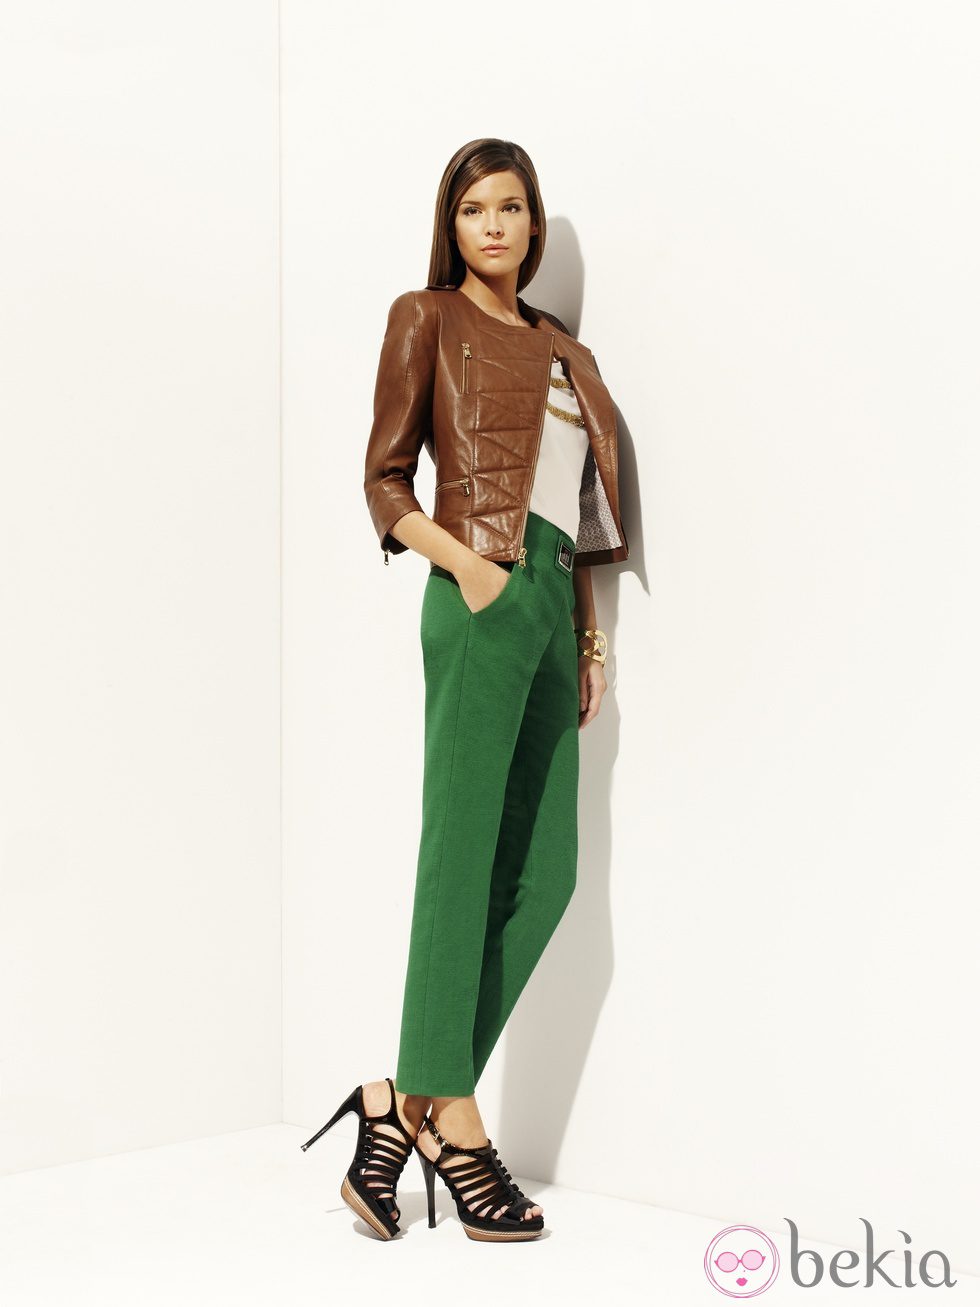 Pnatalón verde y chaqueta de cuero marrón de la colección 'Green' primavera/verano 2012 de Pedro del Hierro